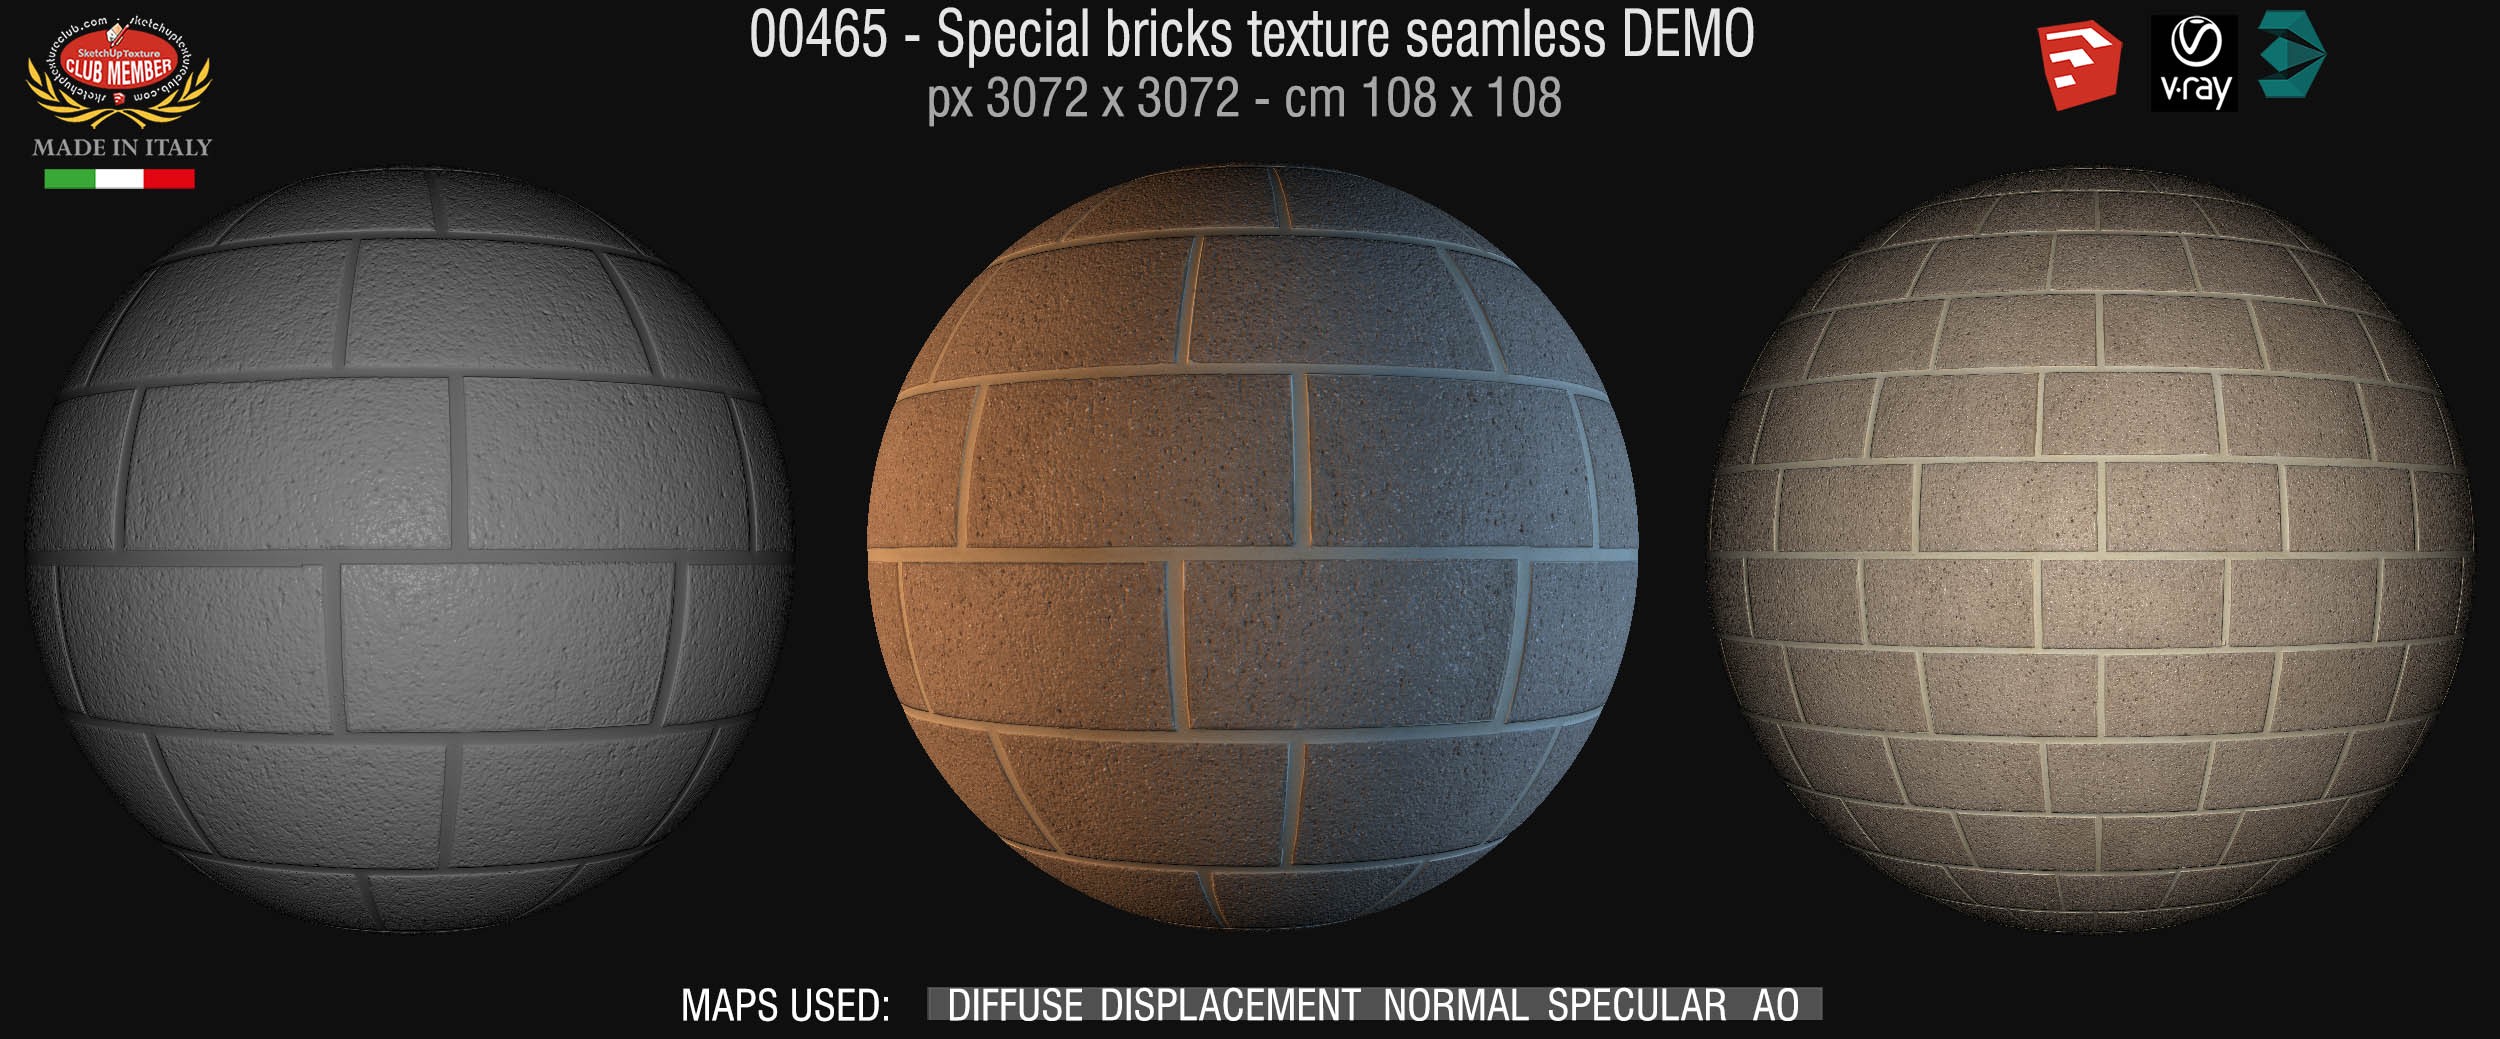 00465 Special bricks texture seamless + maps DEMO